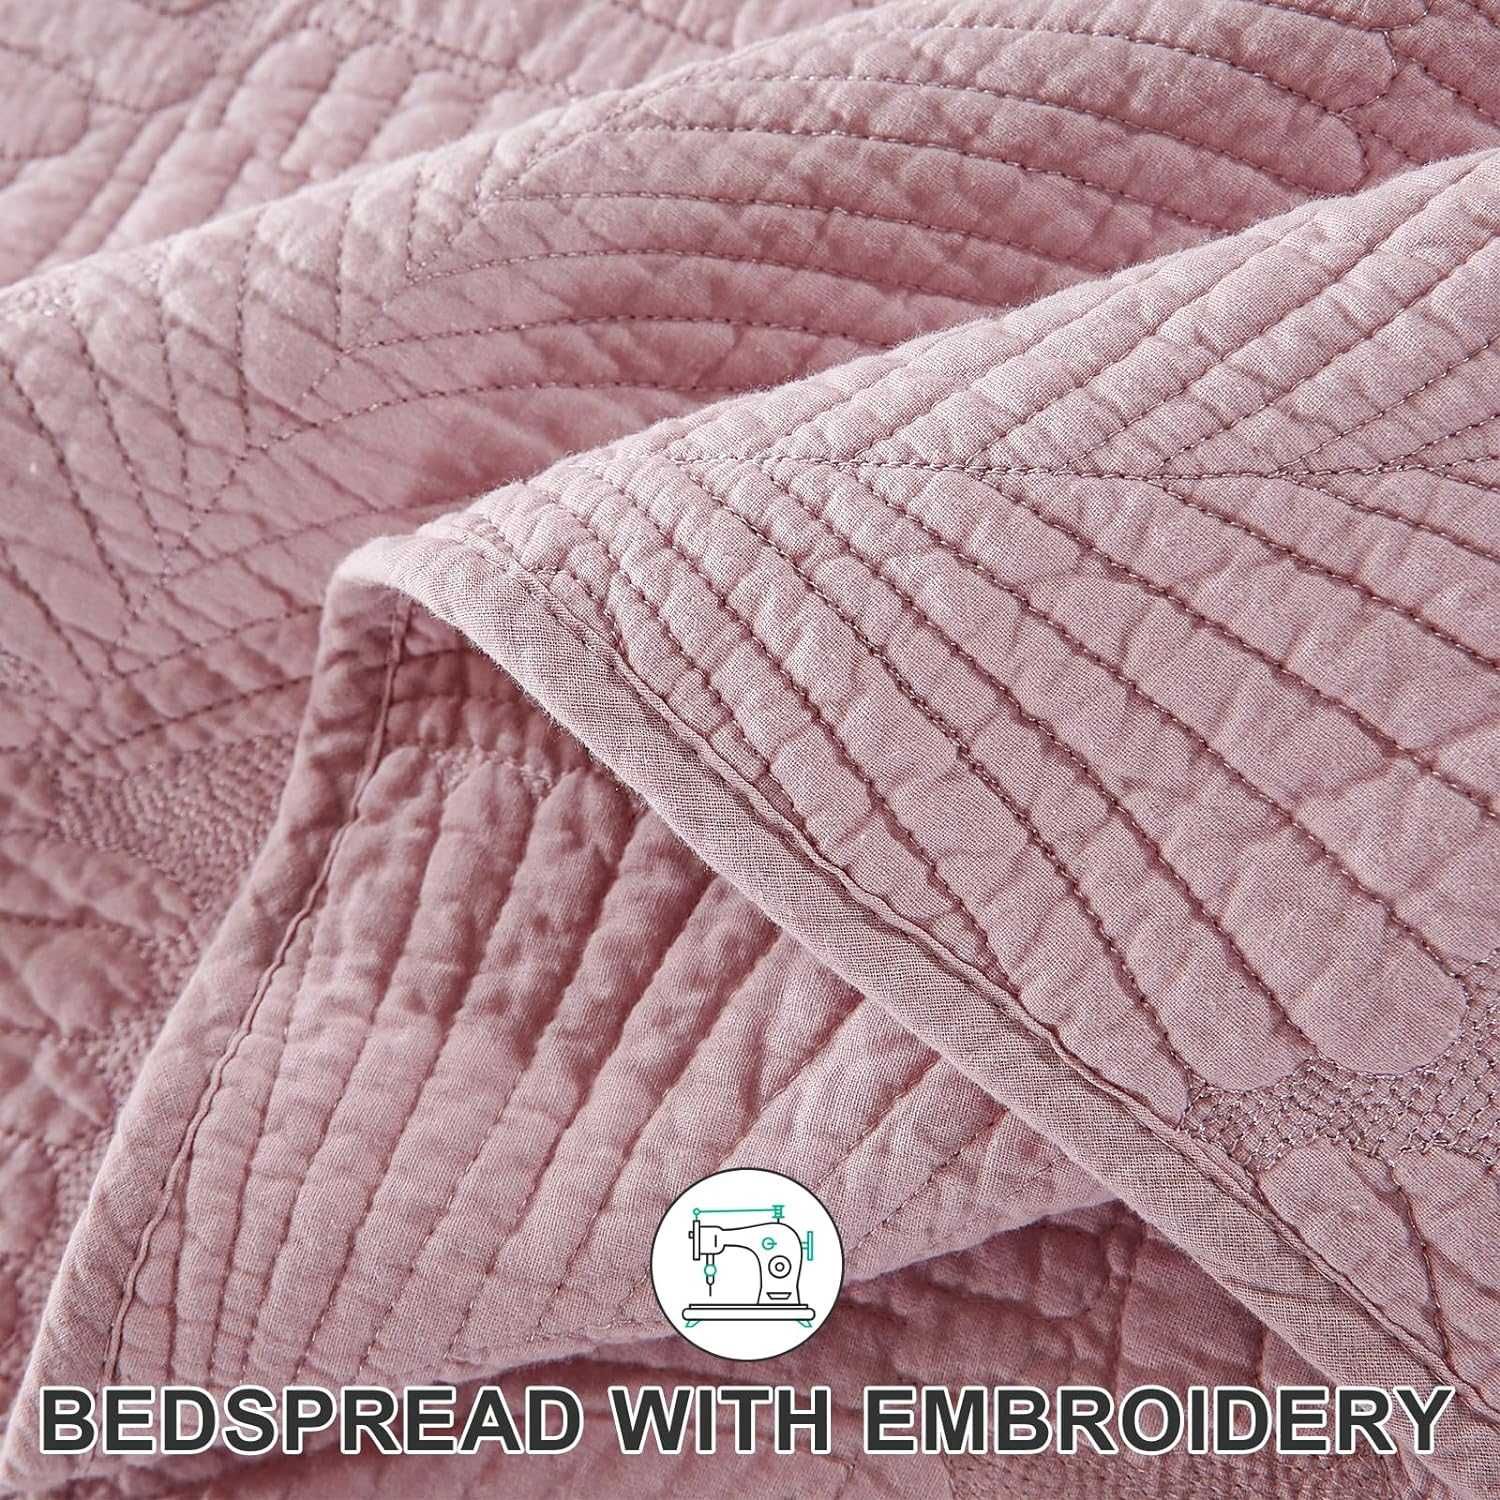 Narzuta dzienna 220 x 240 cm, różowa, bawełniana + poduszki